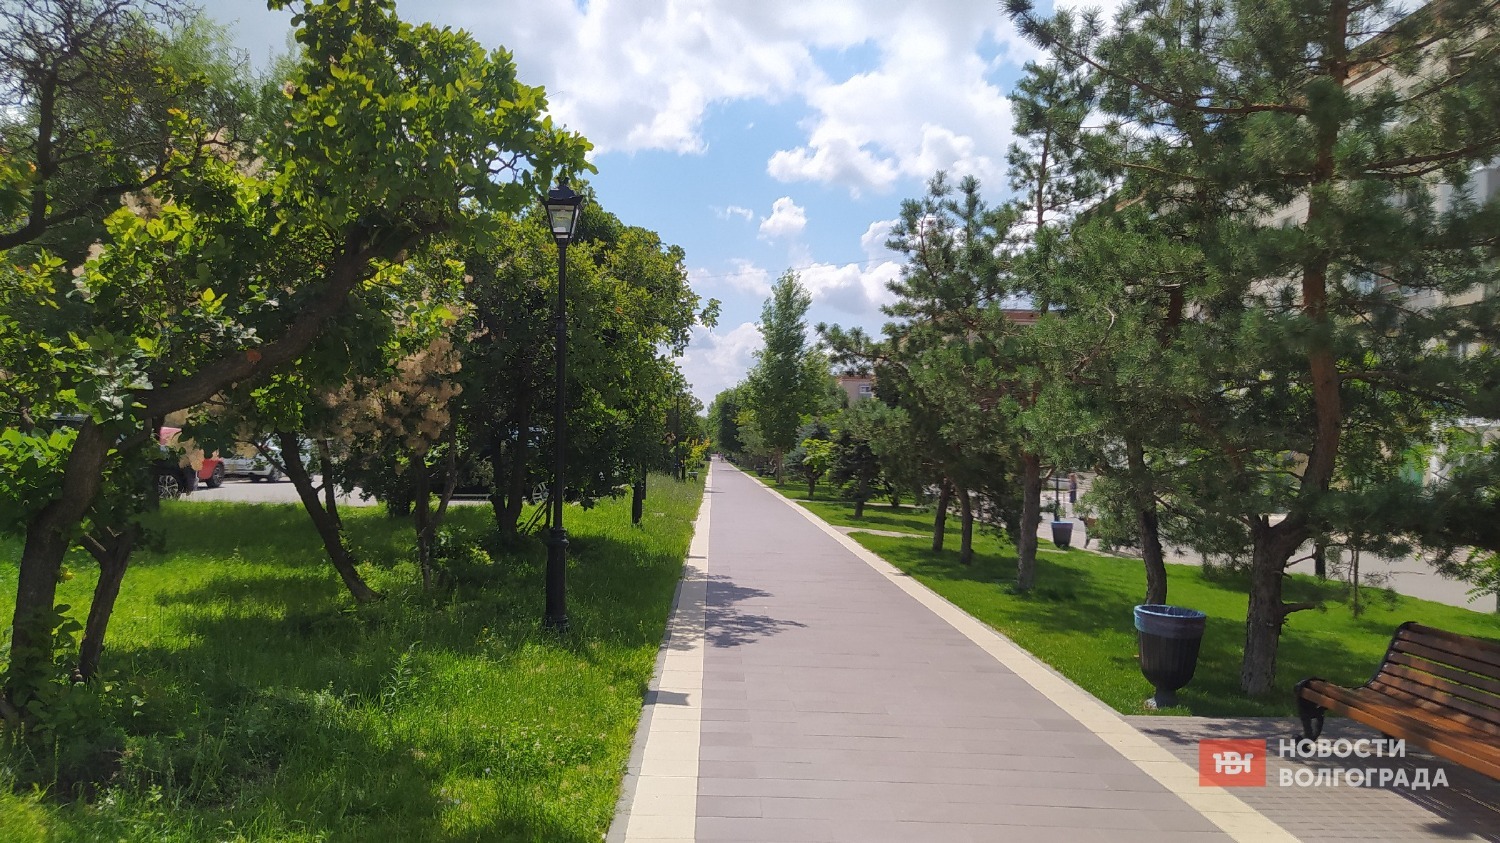 Бульвар вдоль проспекта им. Жукова в Волгограде благоустроили в 2022 году